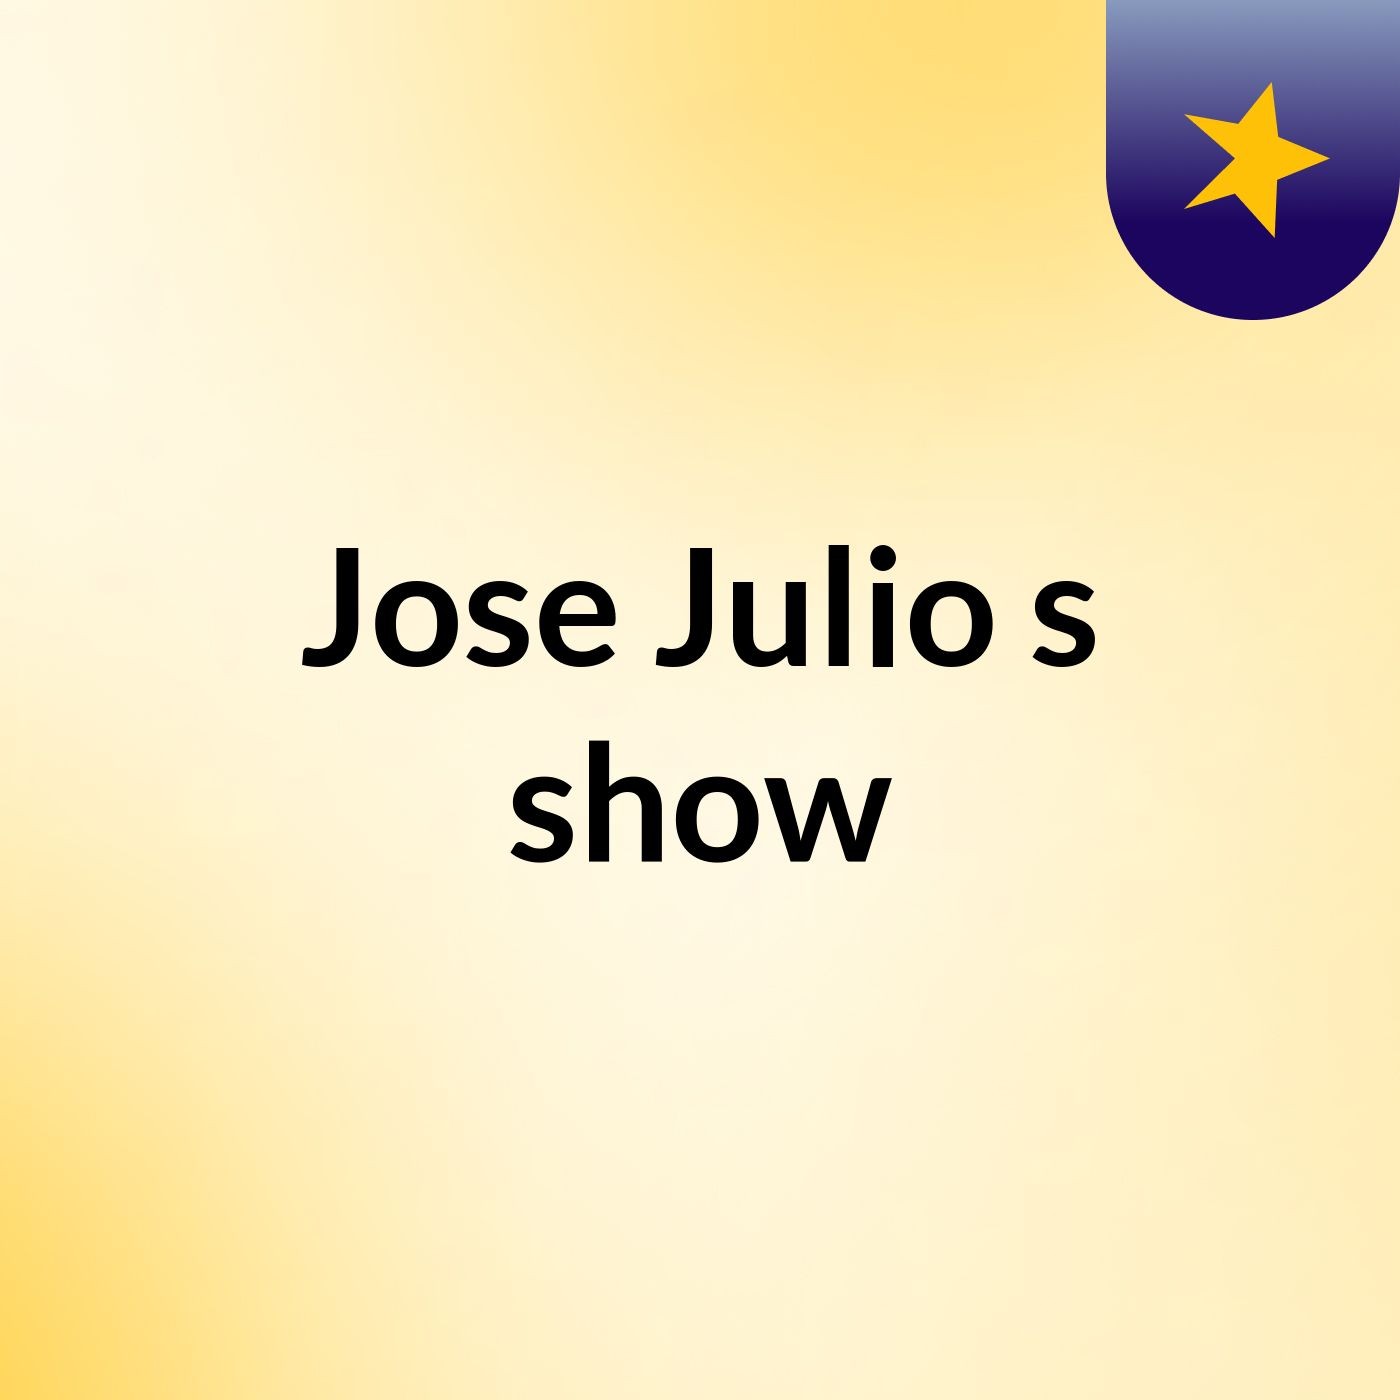 Jose Julio's show